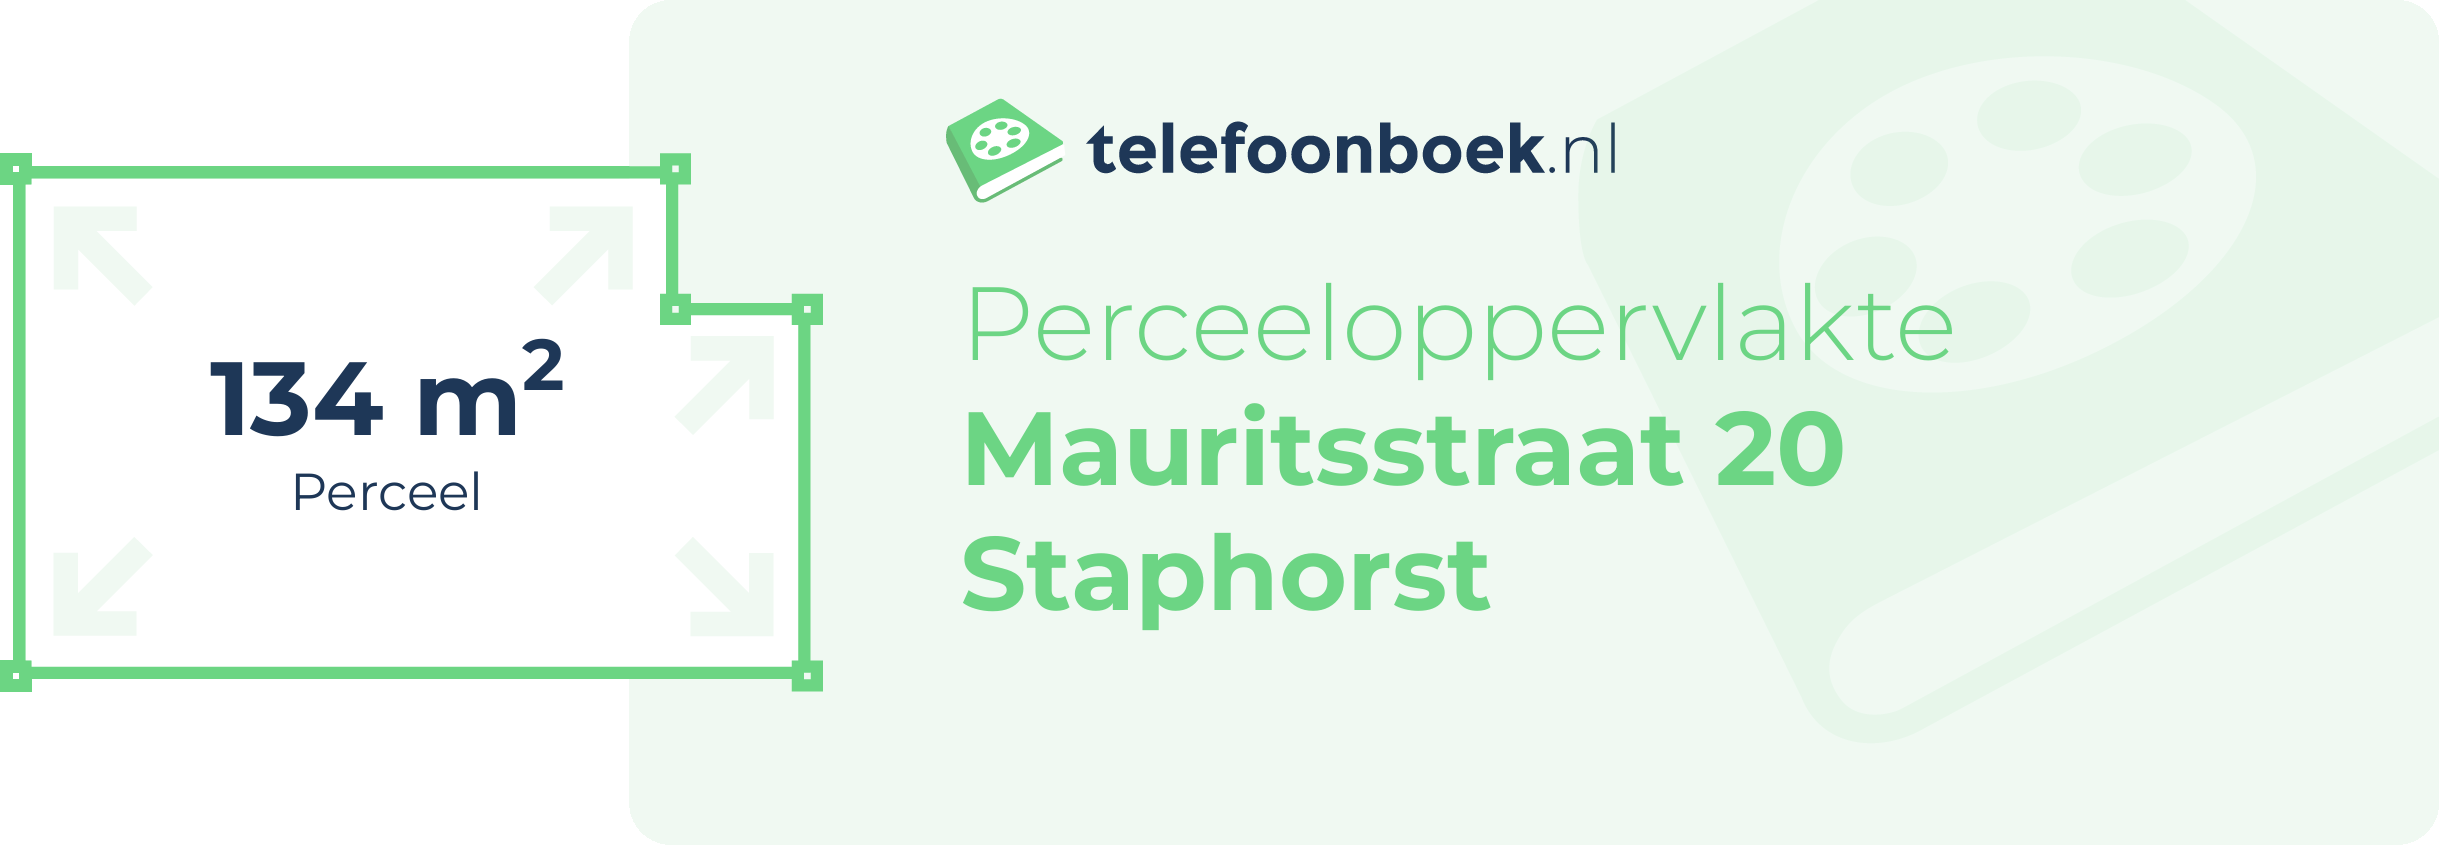 Perceeloppervlakte Mauritsstraat 20 Staphorst